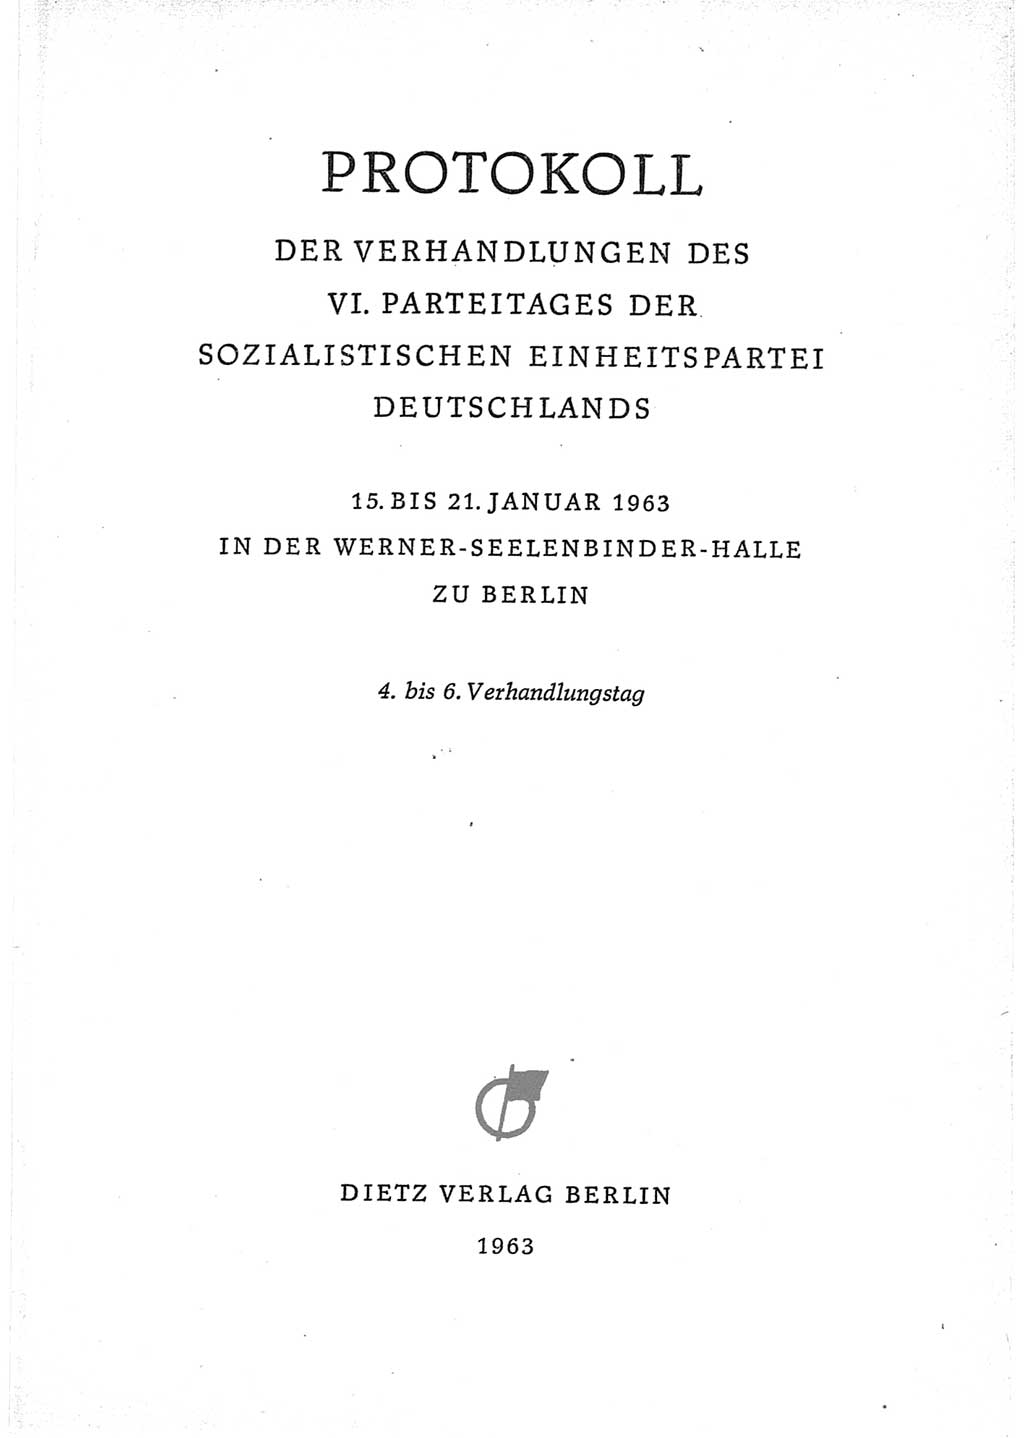 Protokoll der Verhandlungen des Ⅵ. Parteitages der Sozialistischen Einheitspartei Deutschlands (SED) [Deutsche Demokratische Republik (DDR)] 1963, Band Ⅱ, Seite 3 (Prot. Verh. Ⅵ. PT SED DDR 1963, Bd. Ⅱ, S. 3)